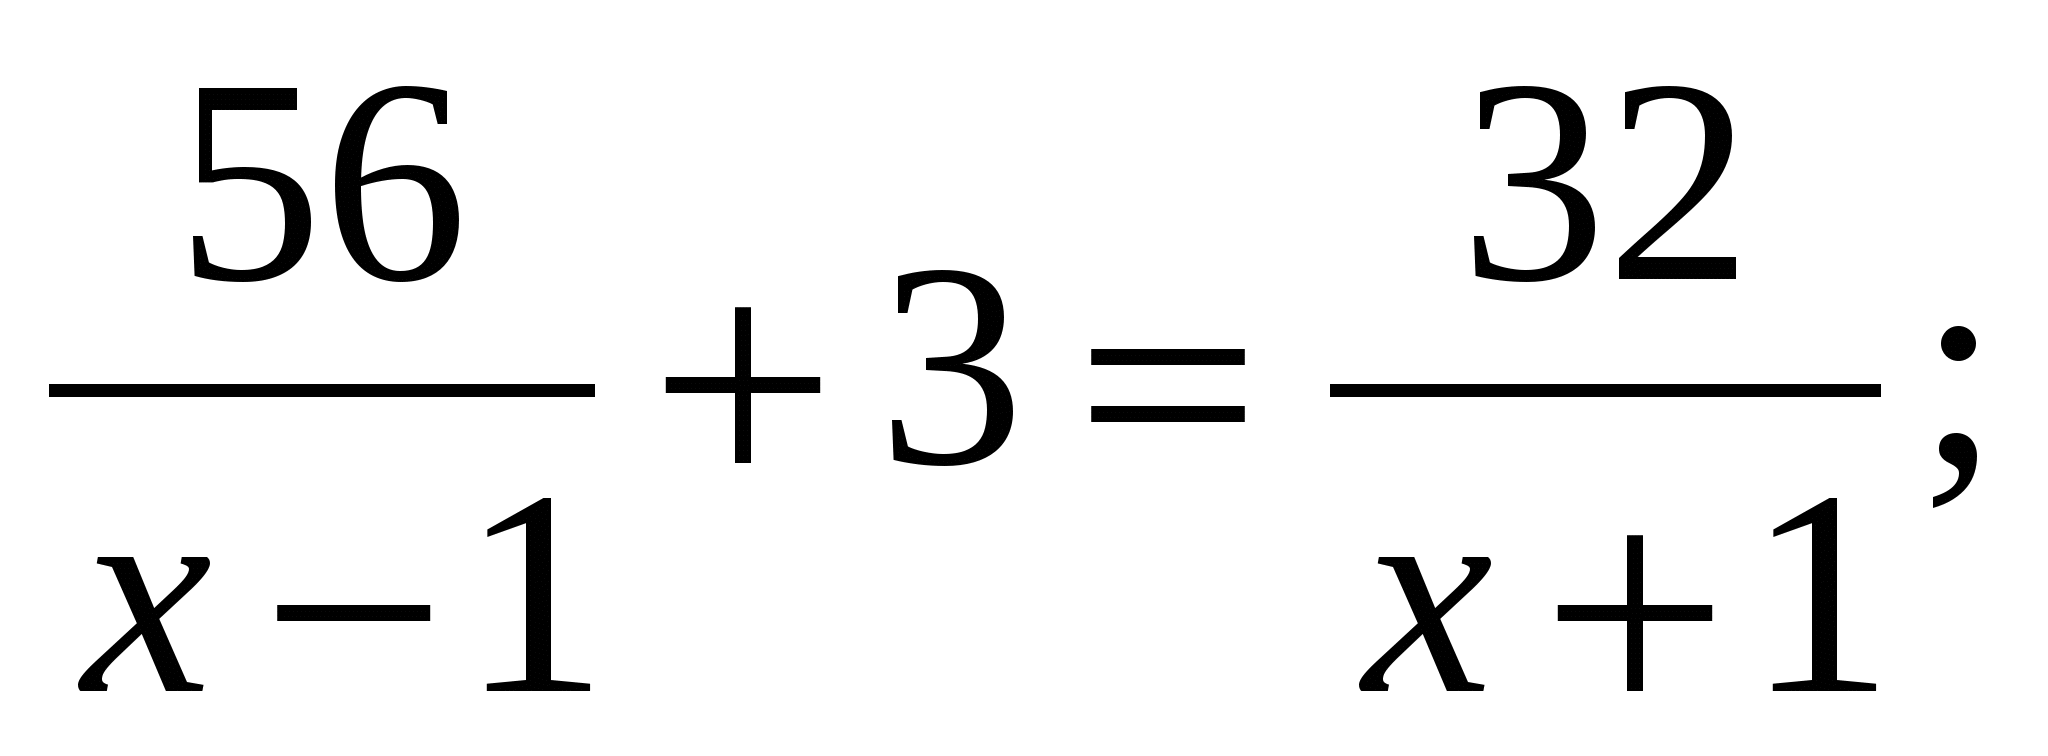 Решите уравнение 8 11 x